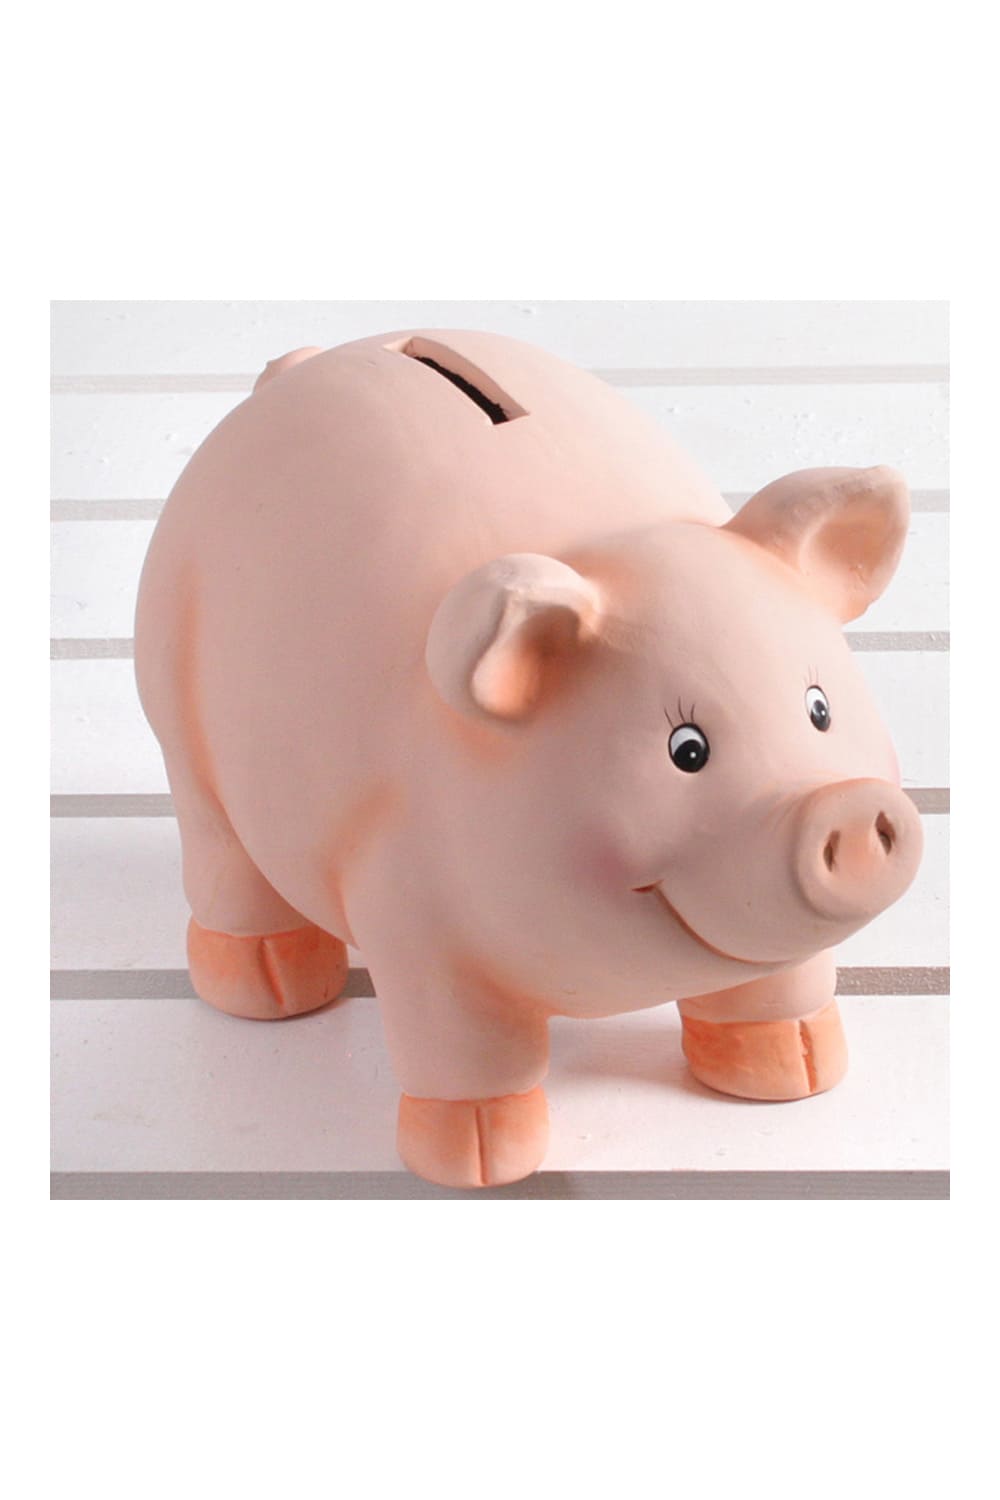 Sparschwein aus Keramik mit Schloss und Schluessel. Ein ideales Geldgeschenk zum Geburtstag, zum Muttertag, zu Weihnachten oder zur Pensionierung.